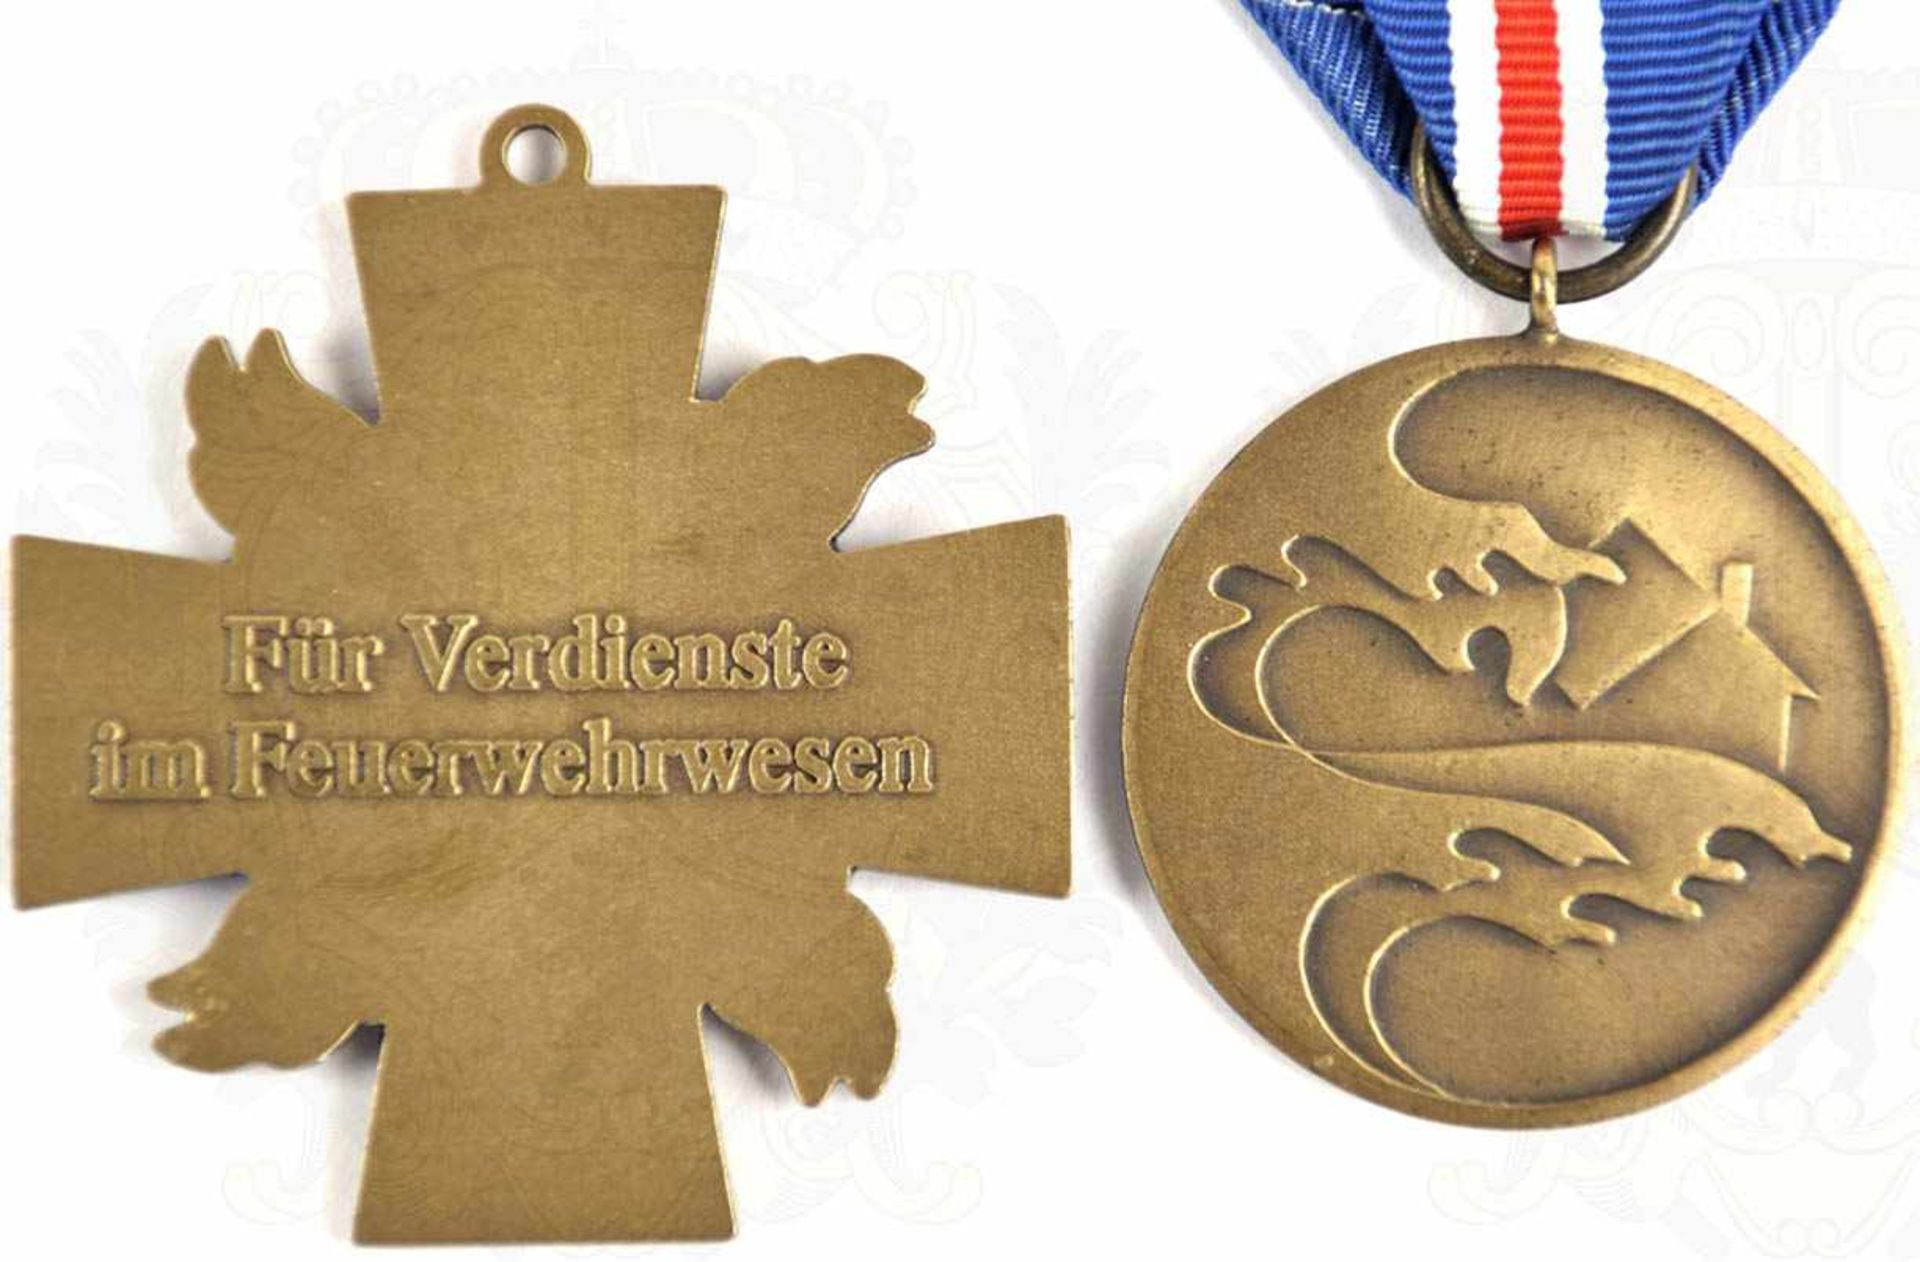 3 AUSZEICHNUNGEN SCHLESWIG-HOLSTEIN, Sturmflut-Medaille 1962, Bronze, am Band; Flutehrenzeichen - Bild 2 aus 2